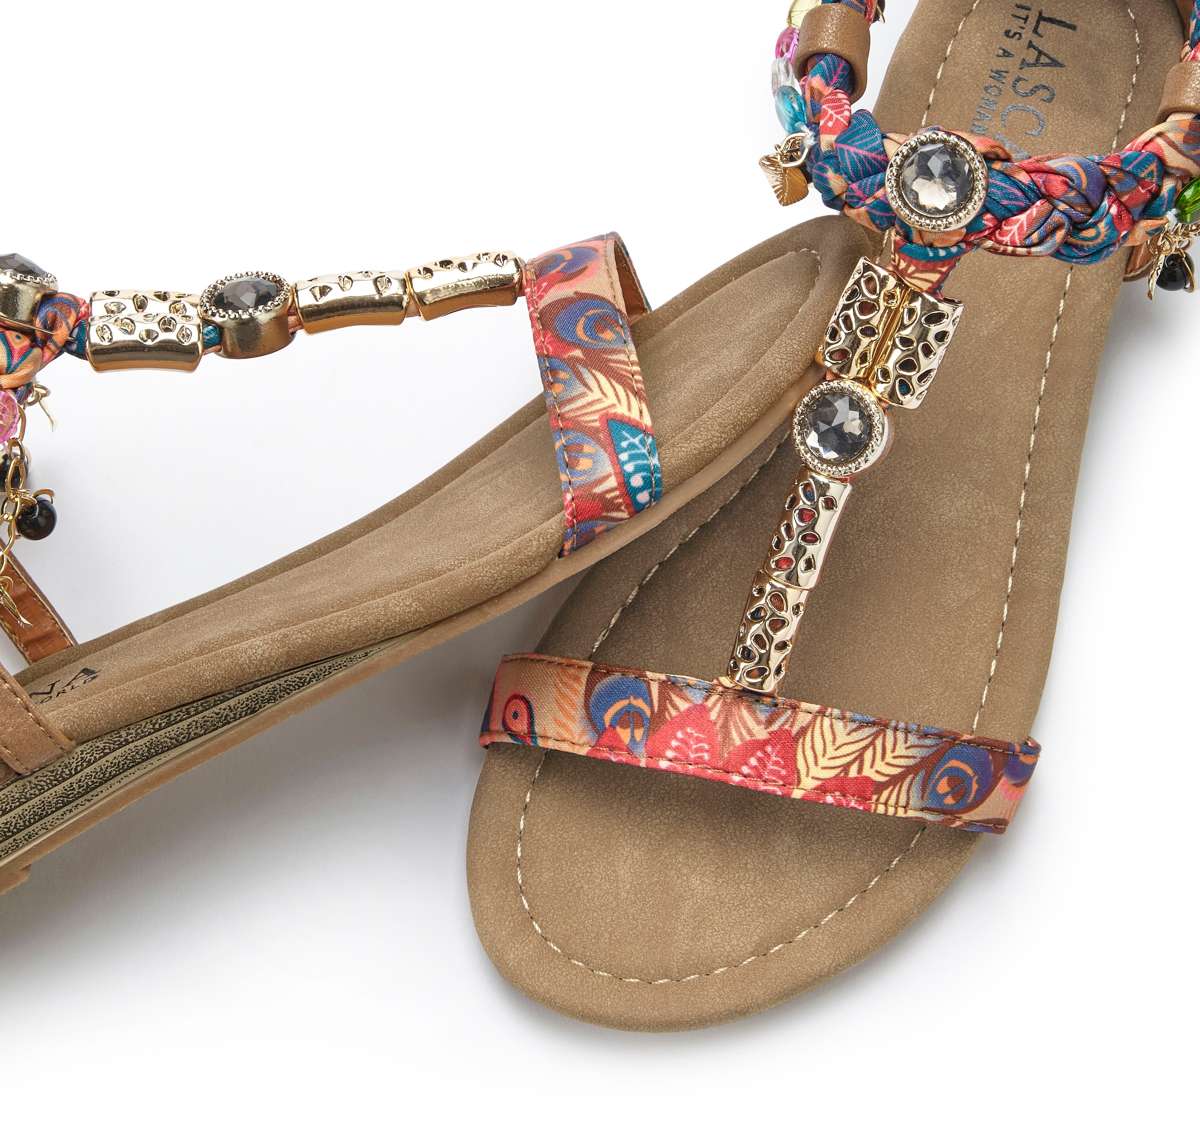 Сандалии, сандалеты, летние туфли с декоративной цепочкой и драгоценными камнями VEGAN